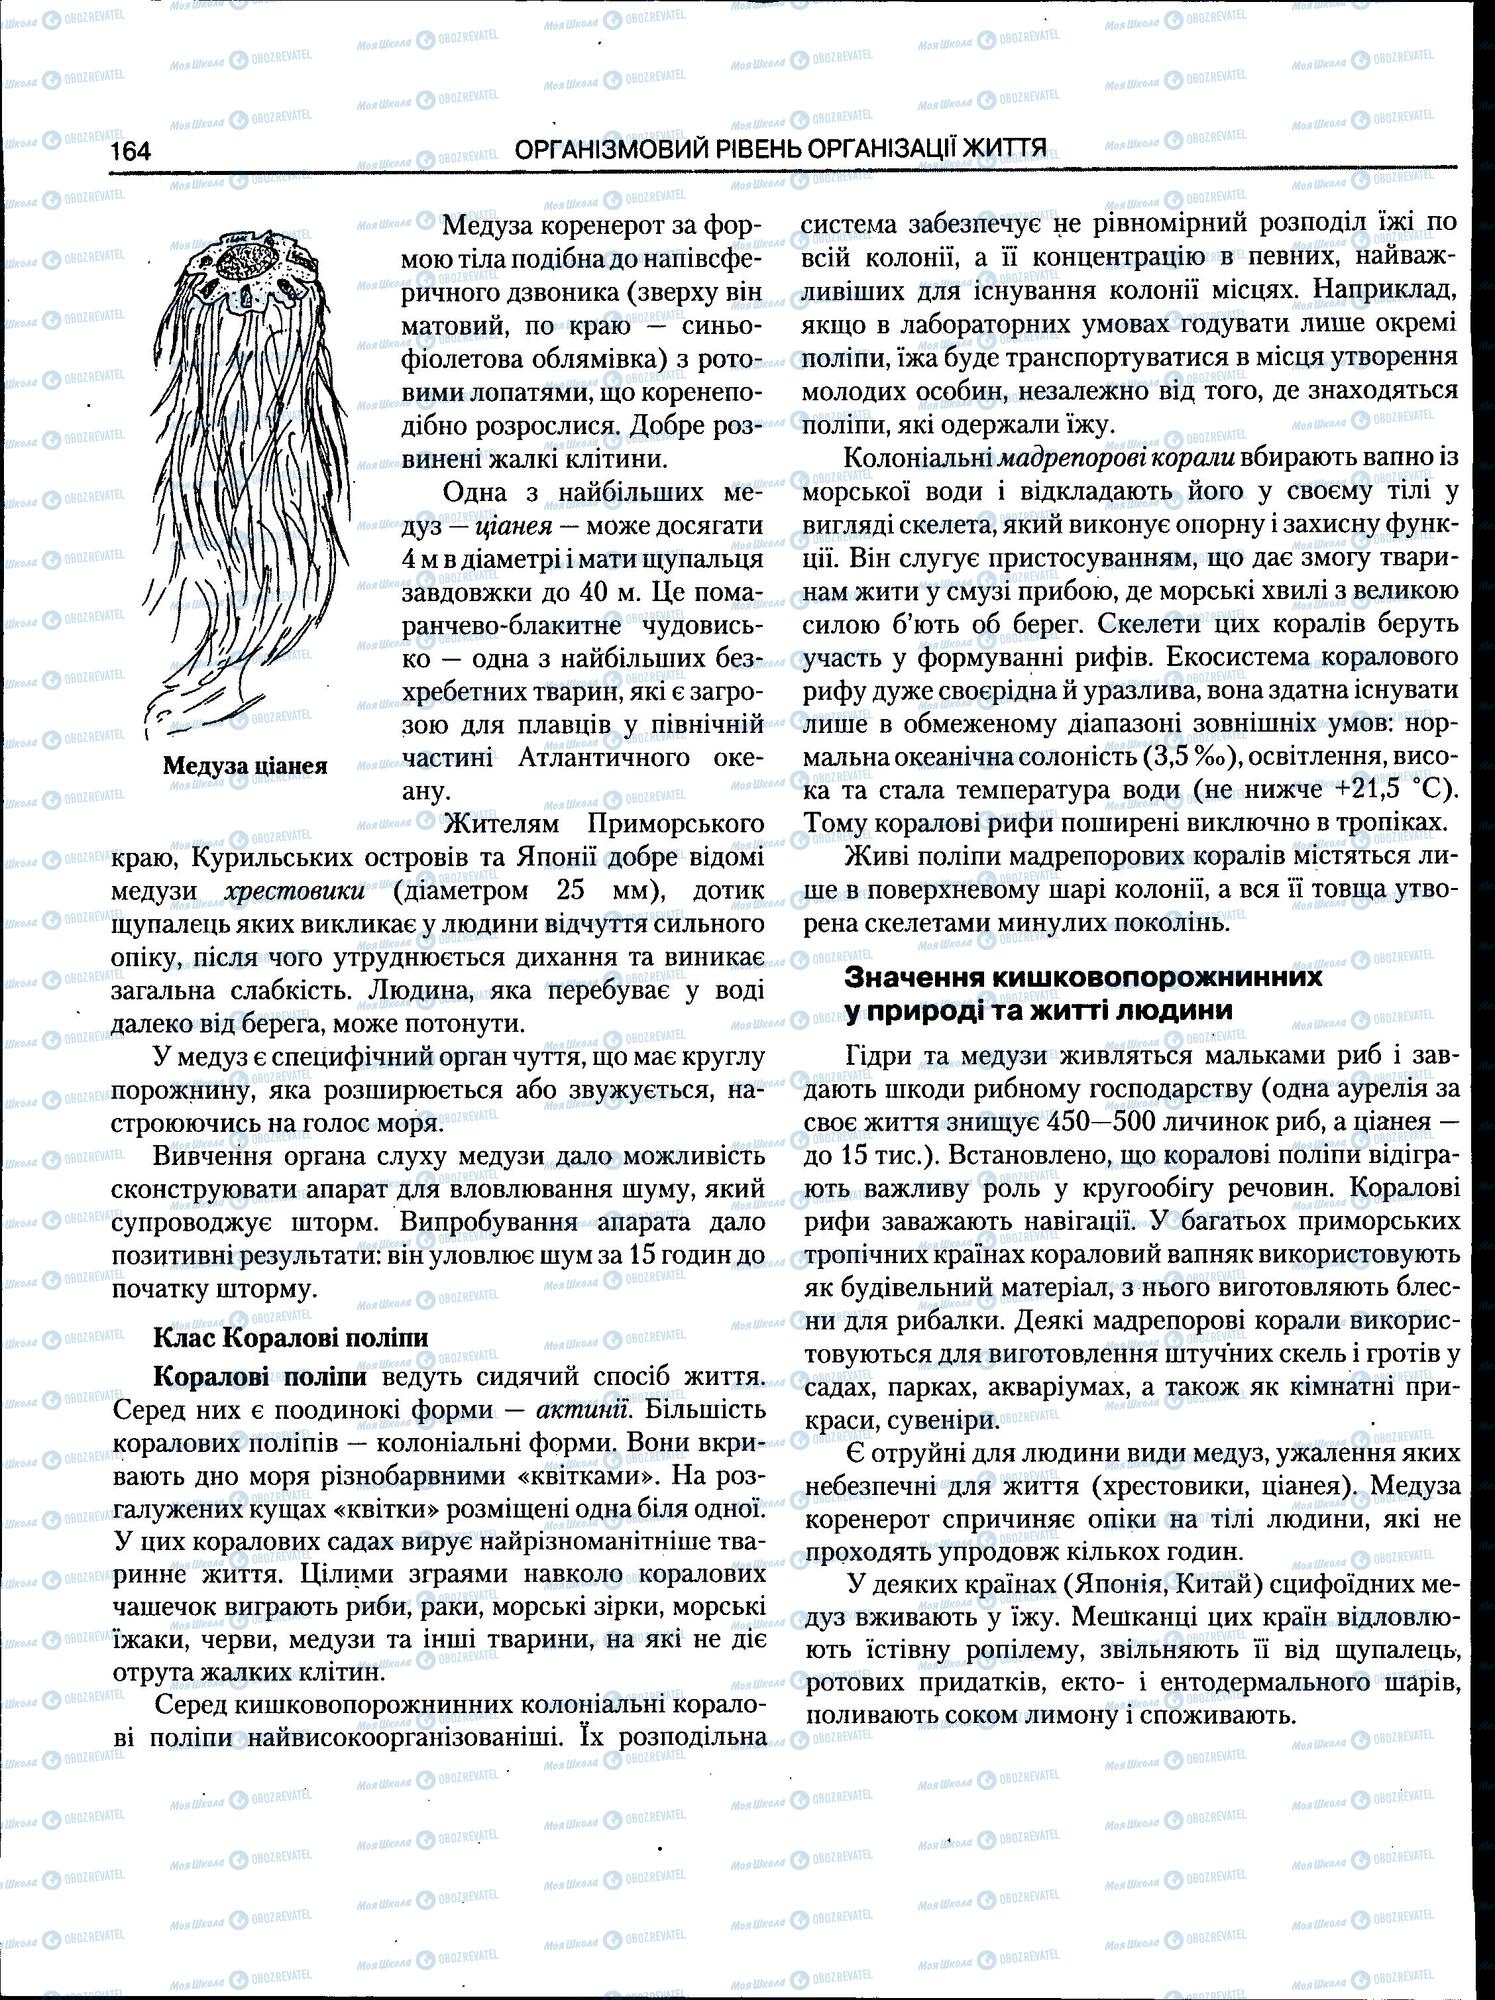 ЗНО Биология 11 класс страница 164